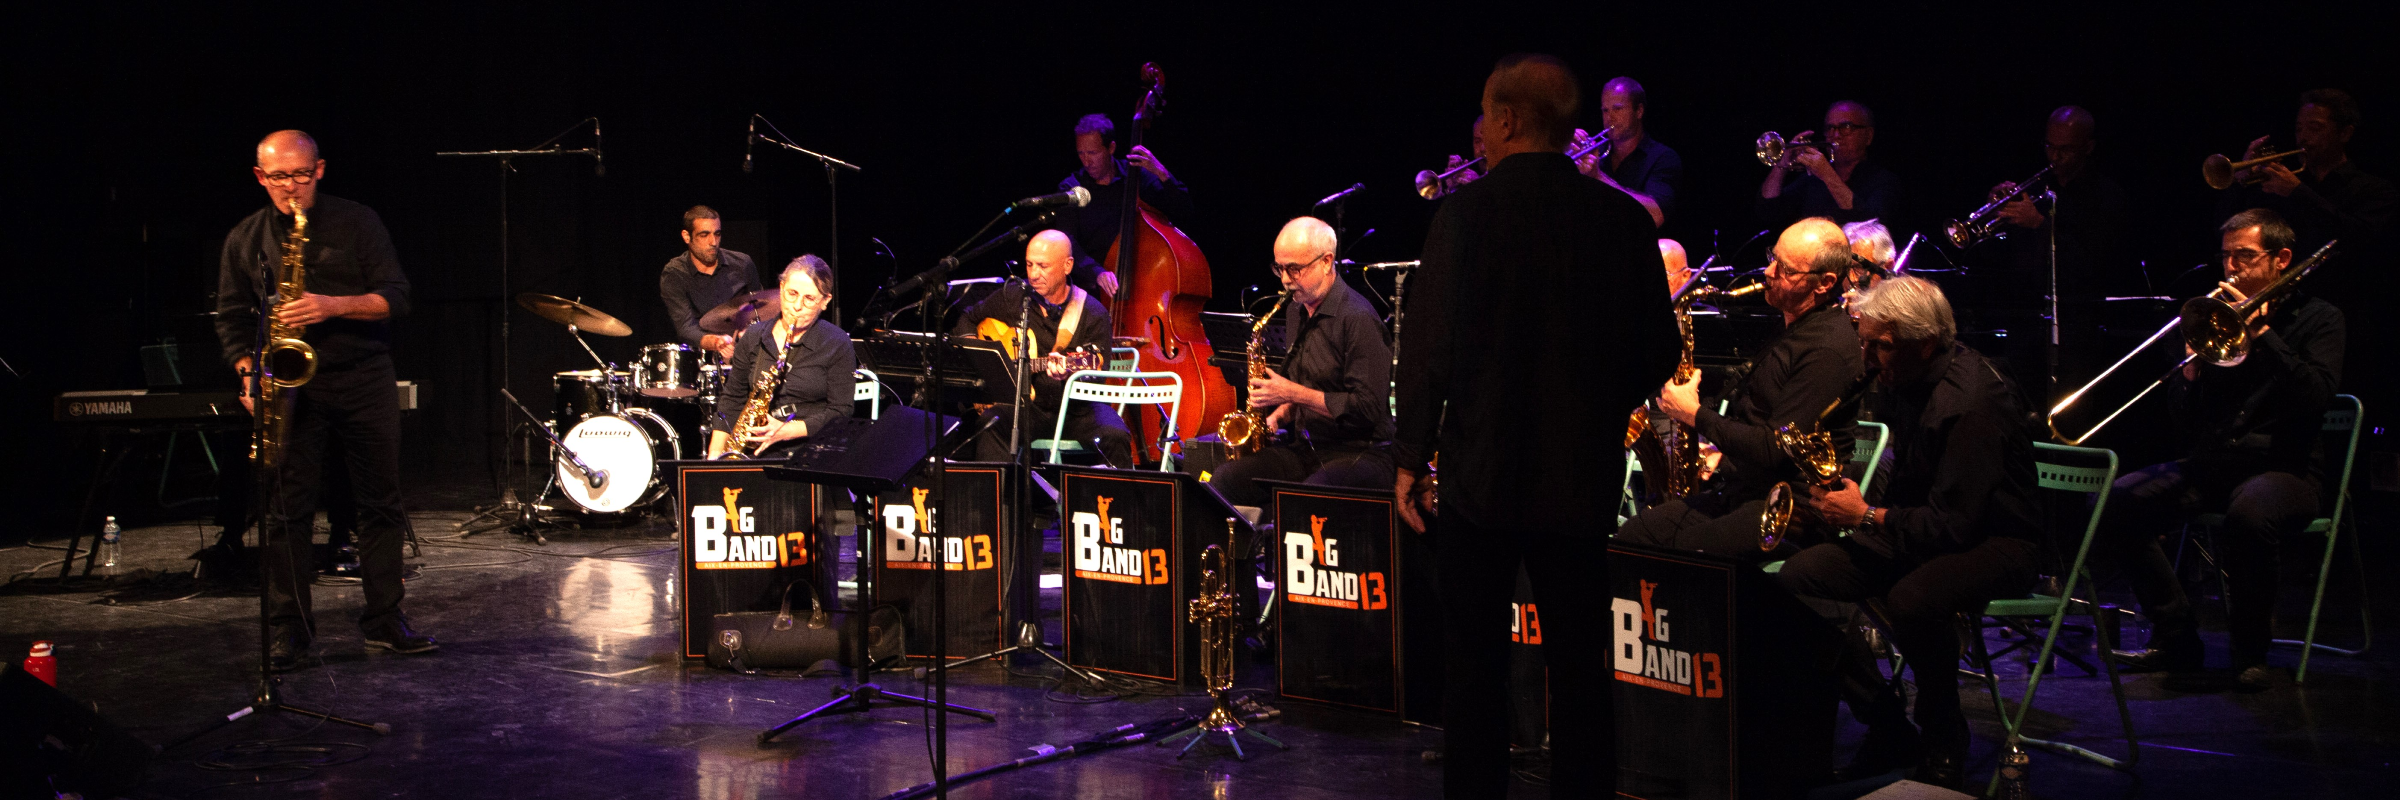 BIG BAND 13, groupe de musique Jazz en représentation à Bouches du Rhône - photo de couverture n° 2